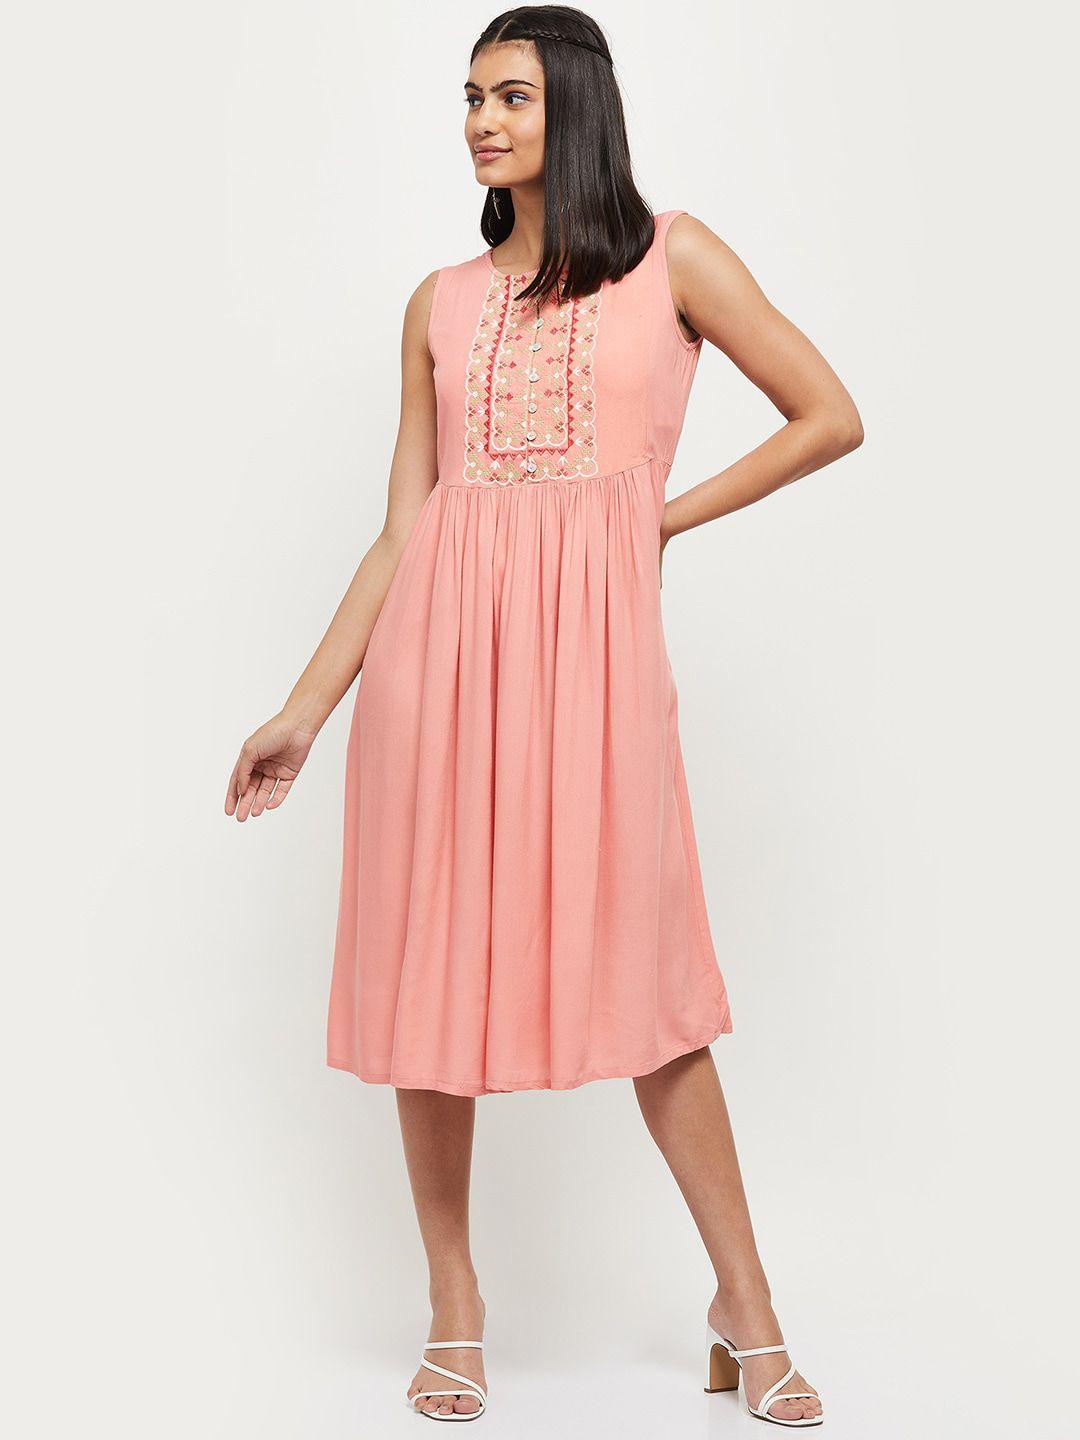 max-pink-midi-dress